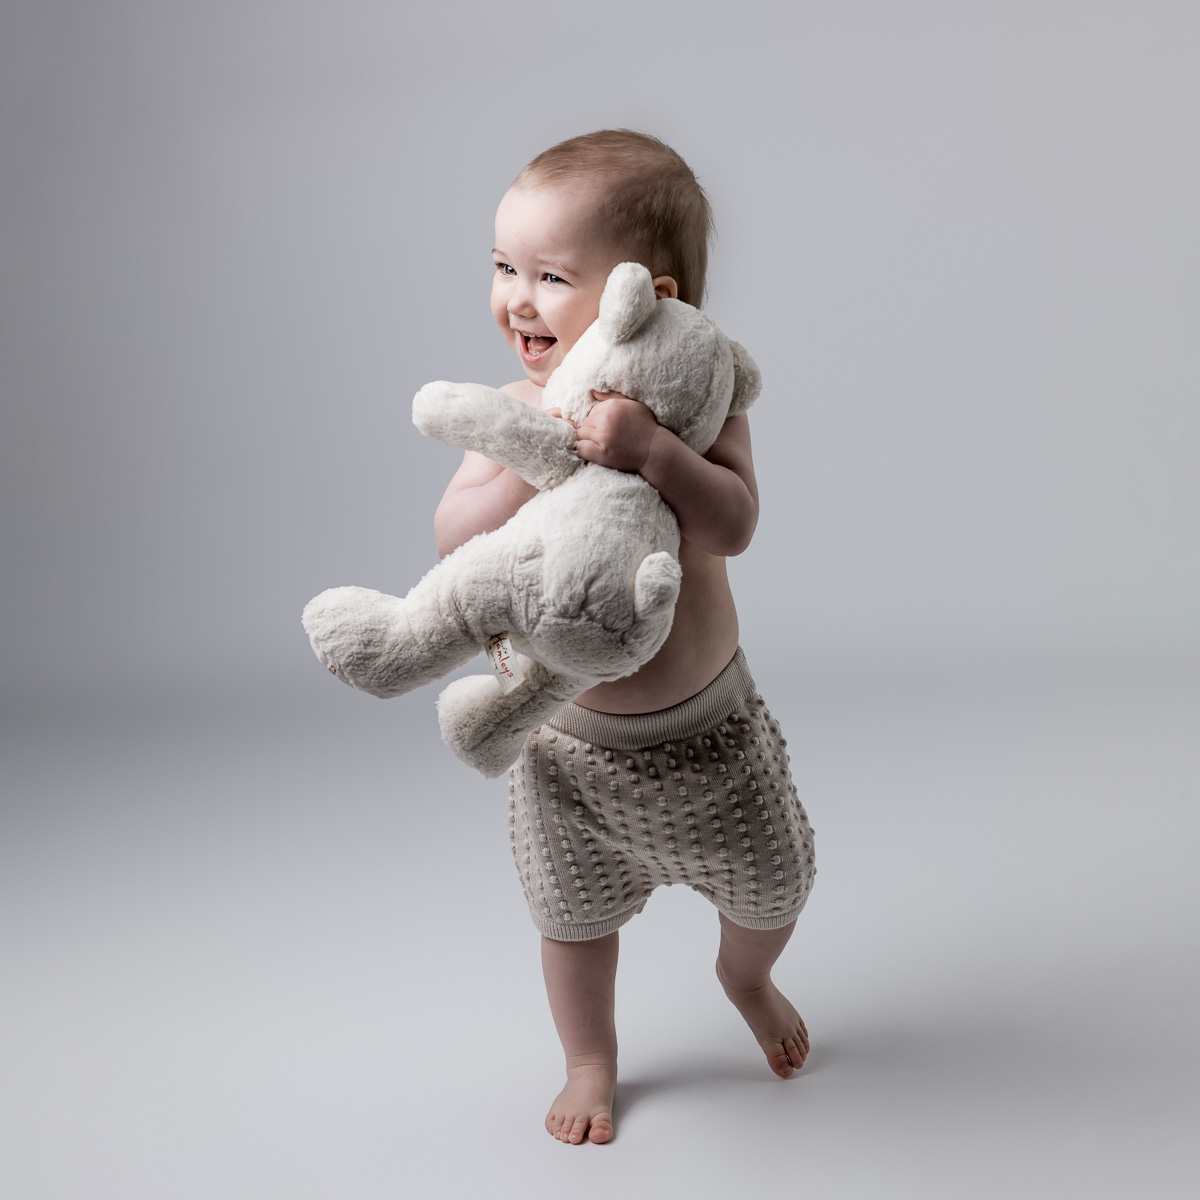 BABYFOTOGRAFERING I STUDIO, babyfoto 3 månaders, 1-årsfotografering, 1 års foto